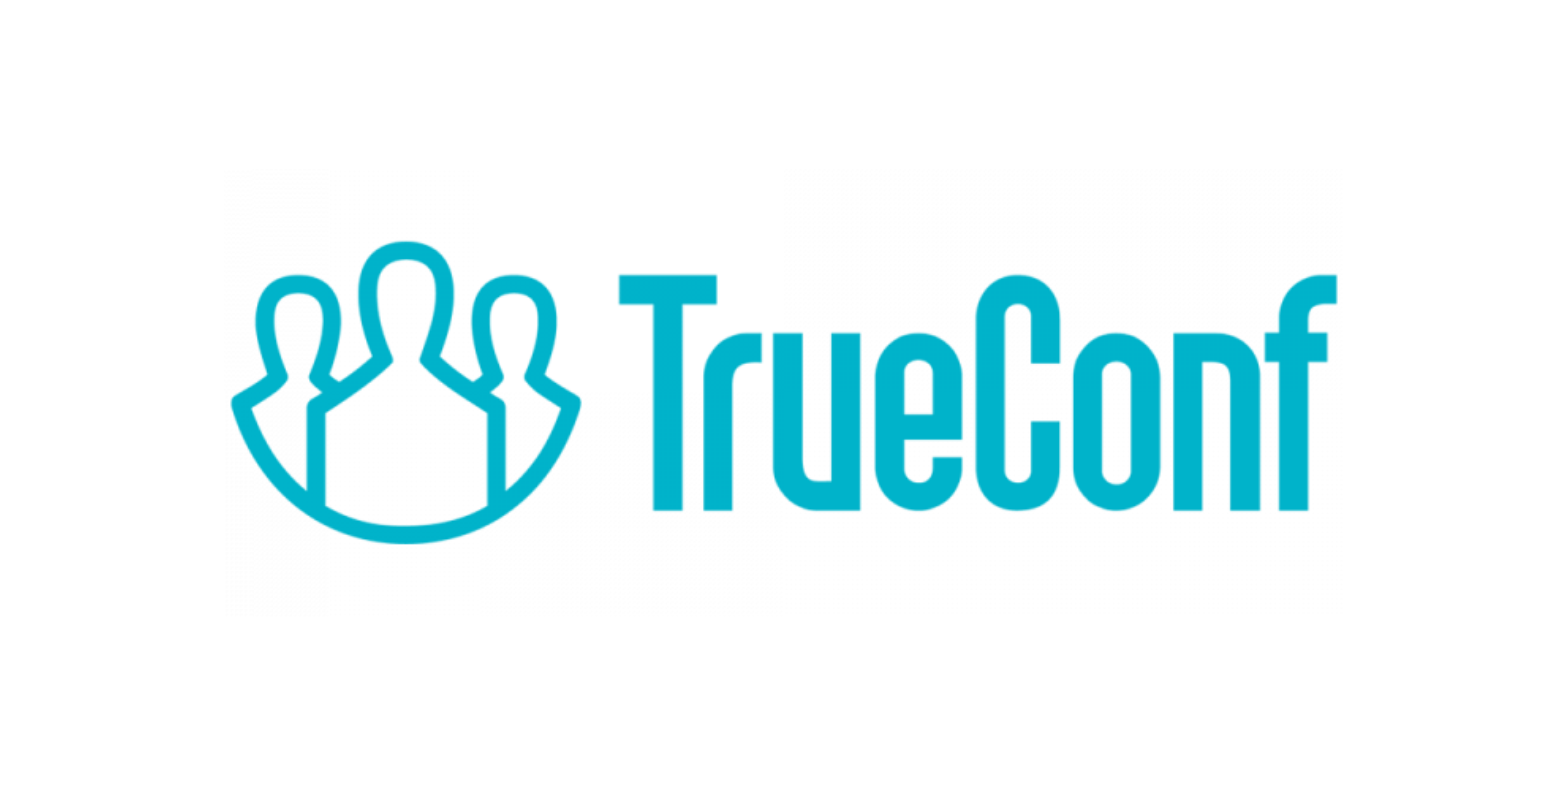 TrueConf Server Техническая поддержка на 1 год полная 20-49   онлайн-пользователей